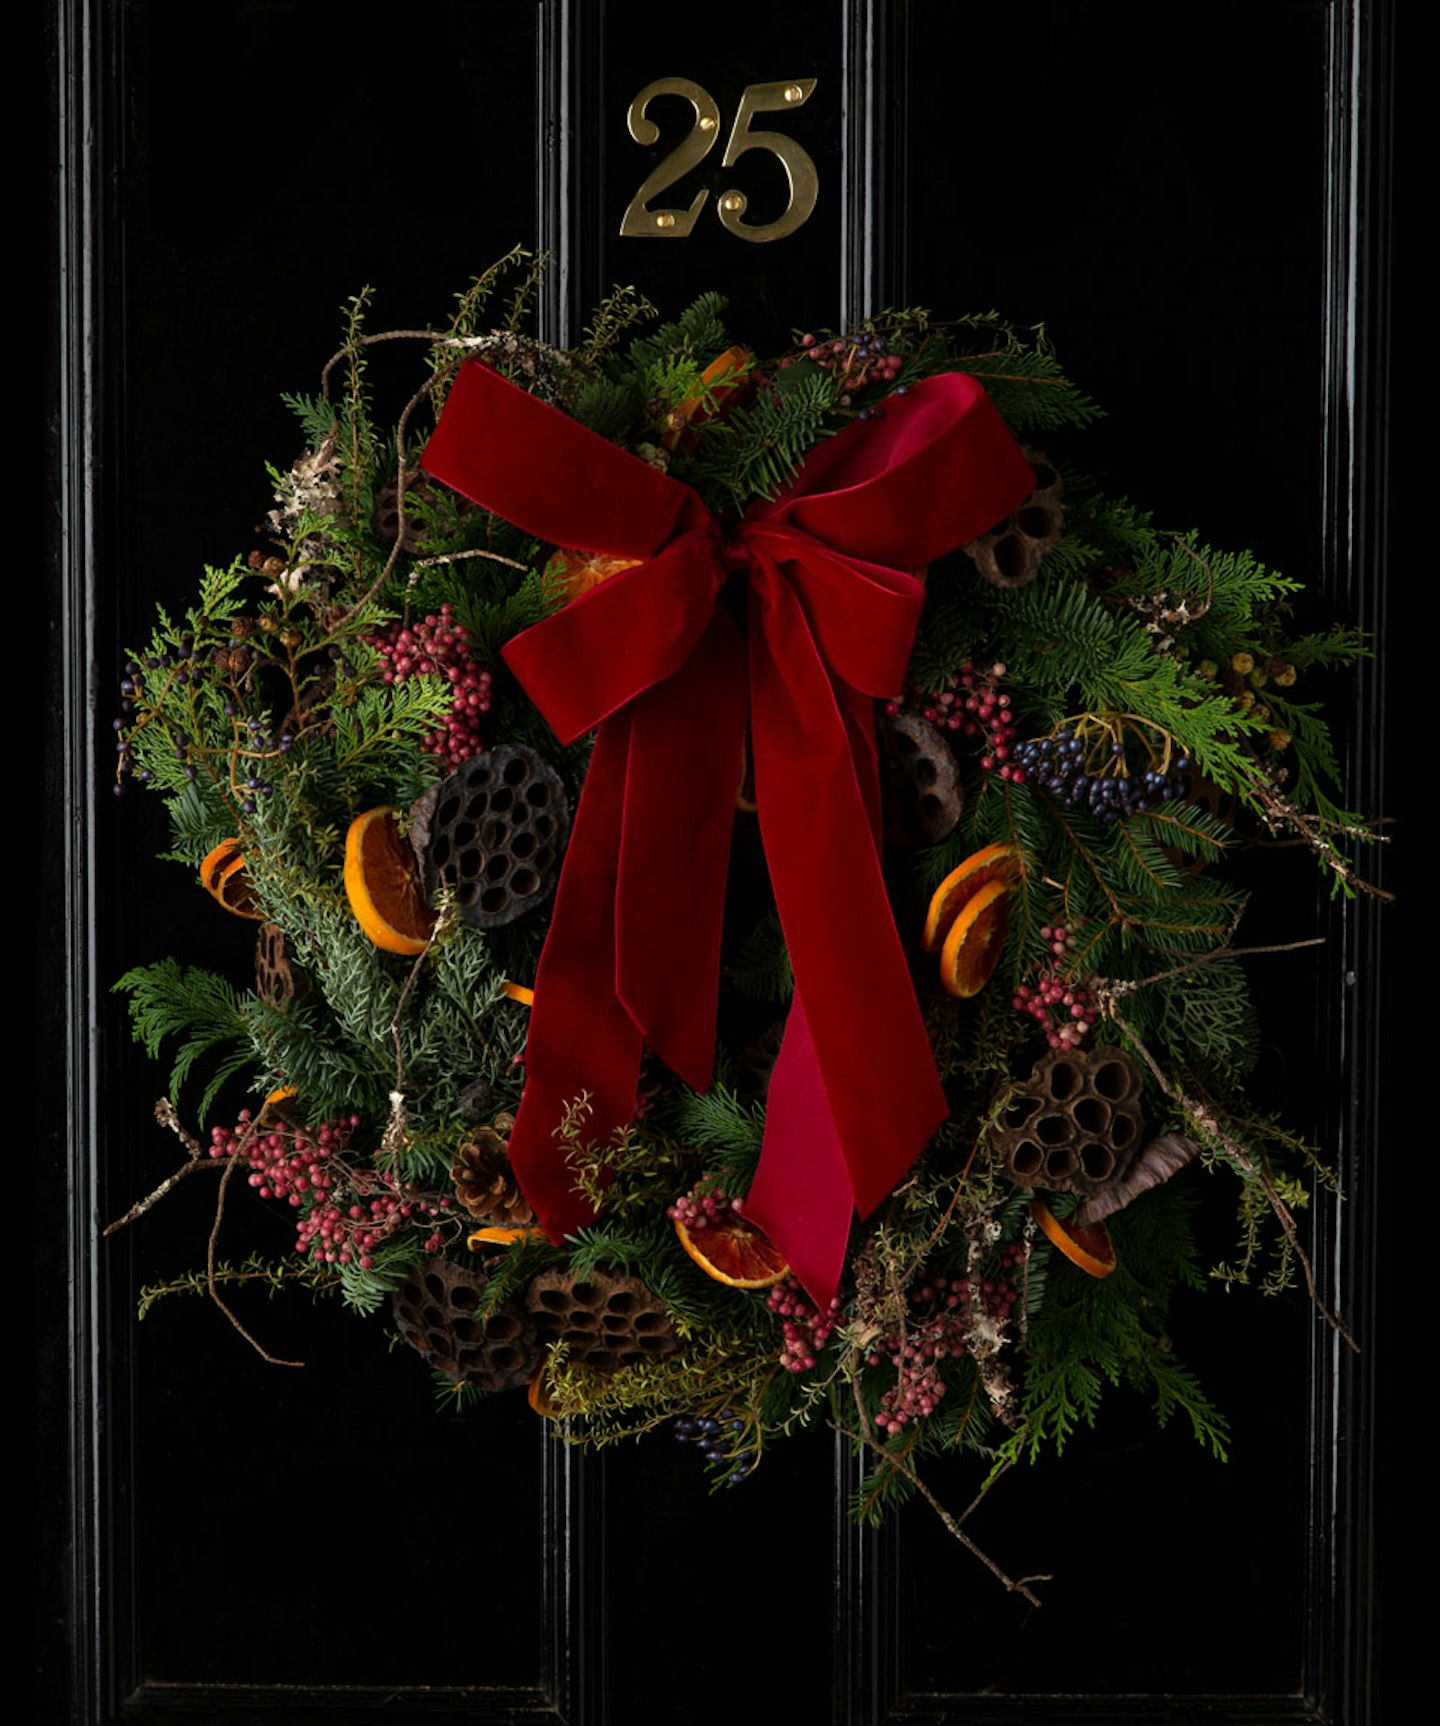 Friday – Ronny Colbie, Christmas Wreaths, £75